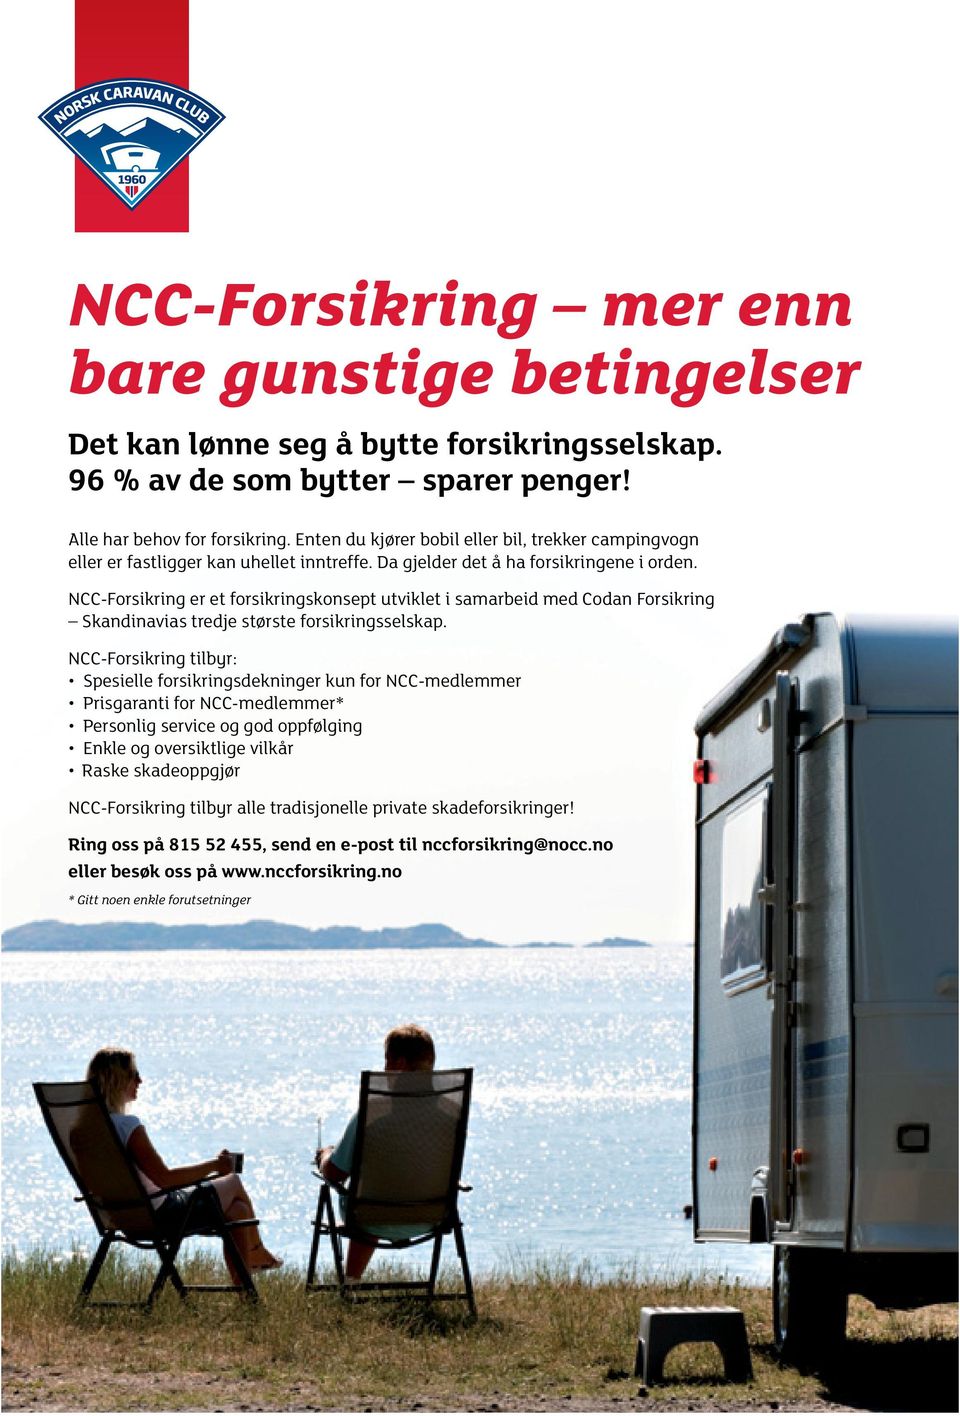 NCC-Forsikring er et forsikringskonsept utviklet i samarbeid med Codan Forsikring Skandinavias tredje største forsikringsselskap.